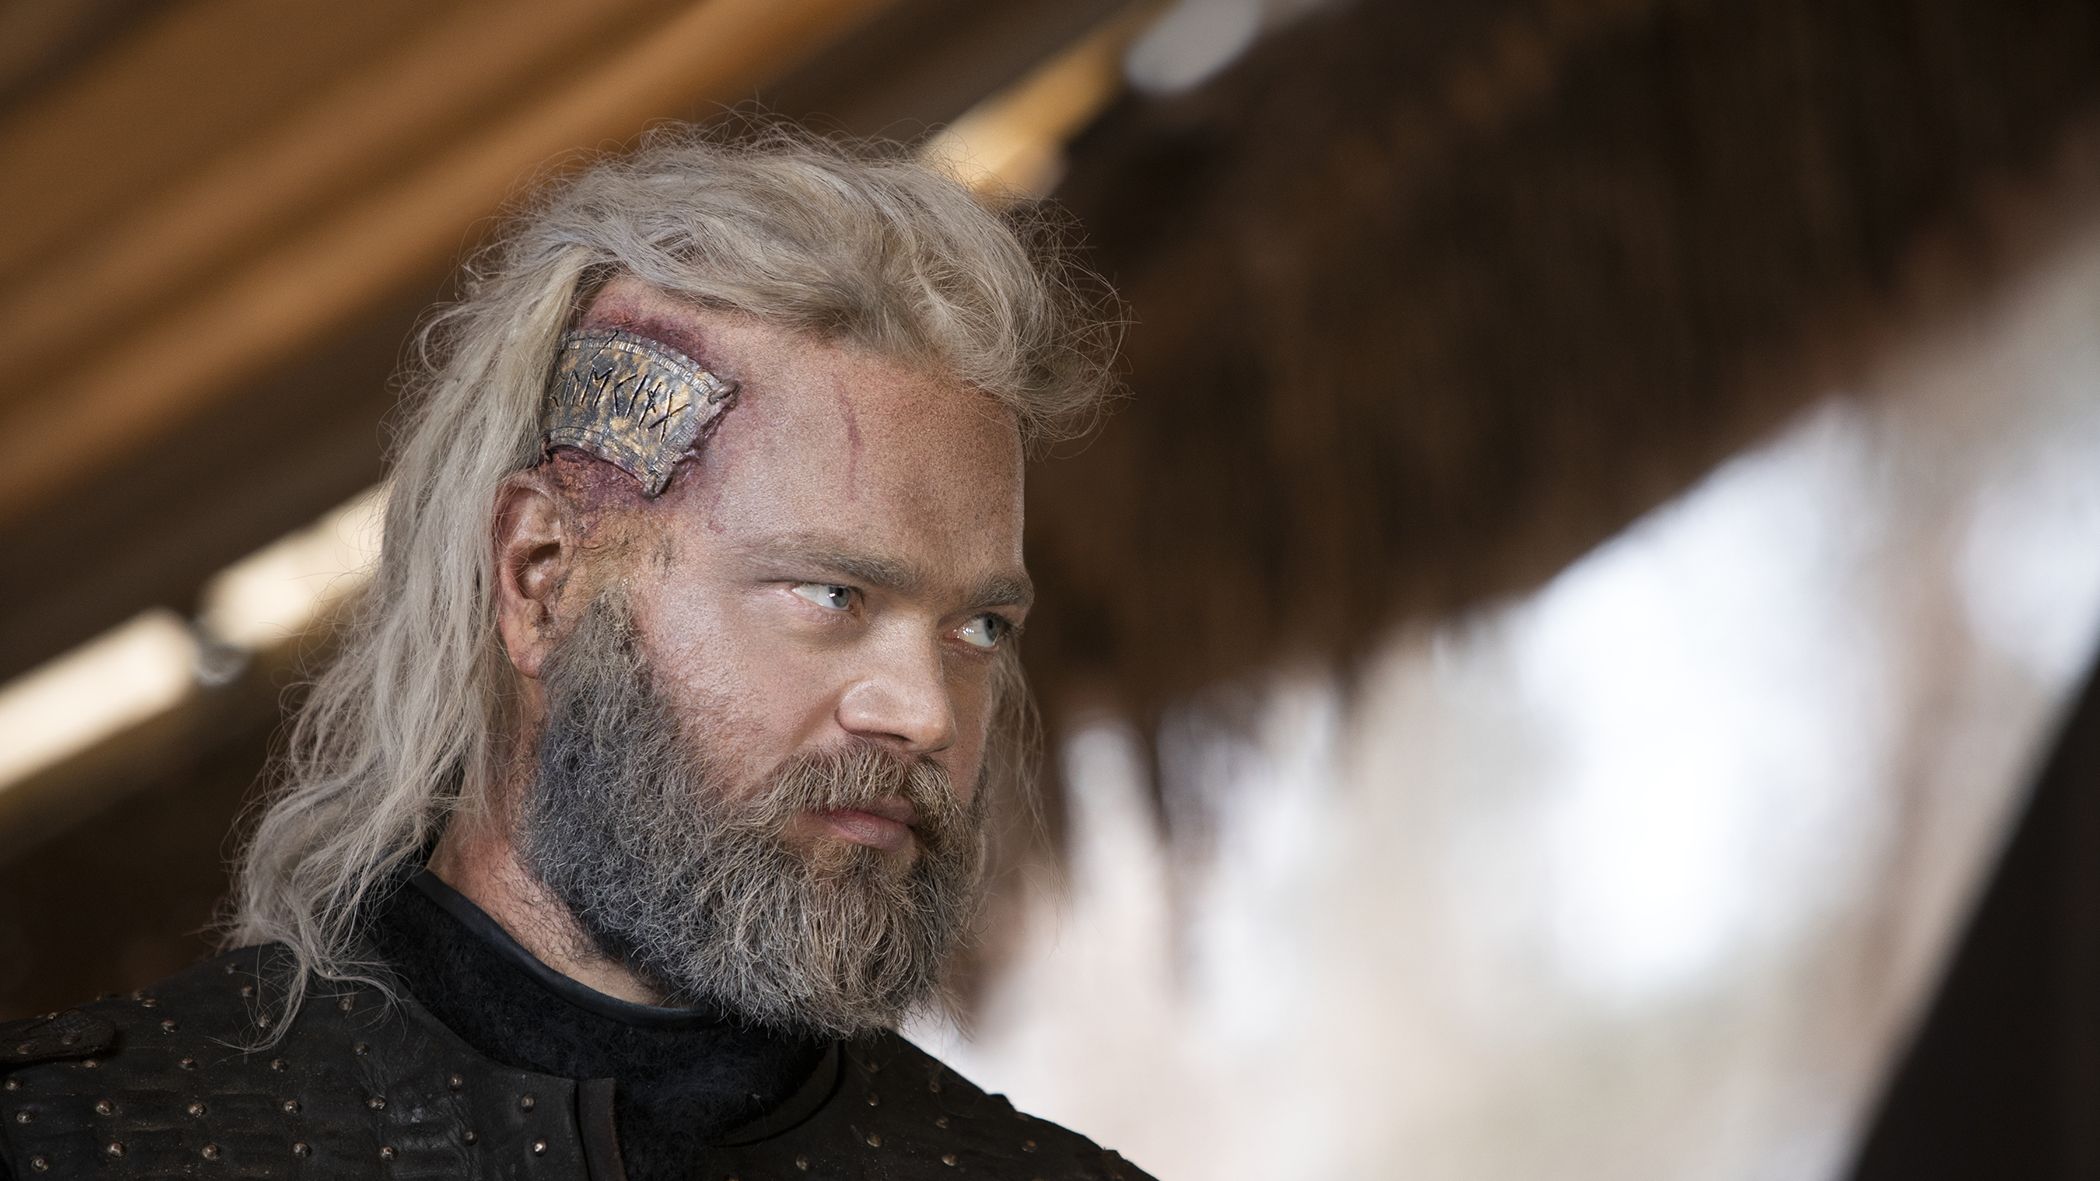 Netflix announces the cast of Vikings: Valhalla